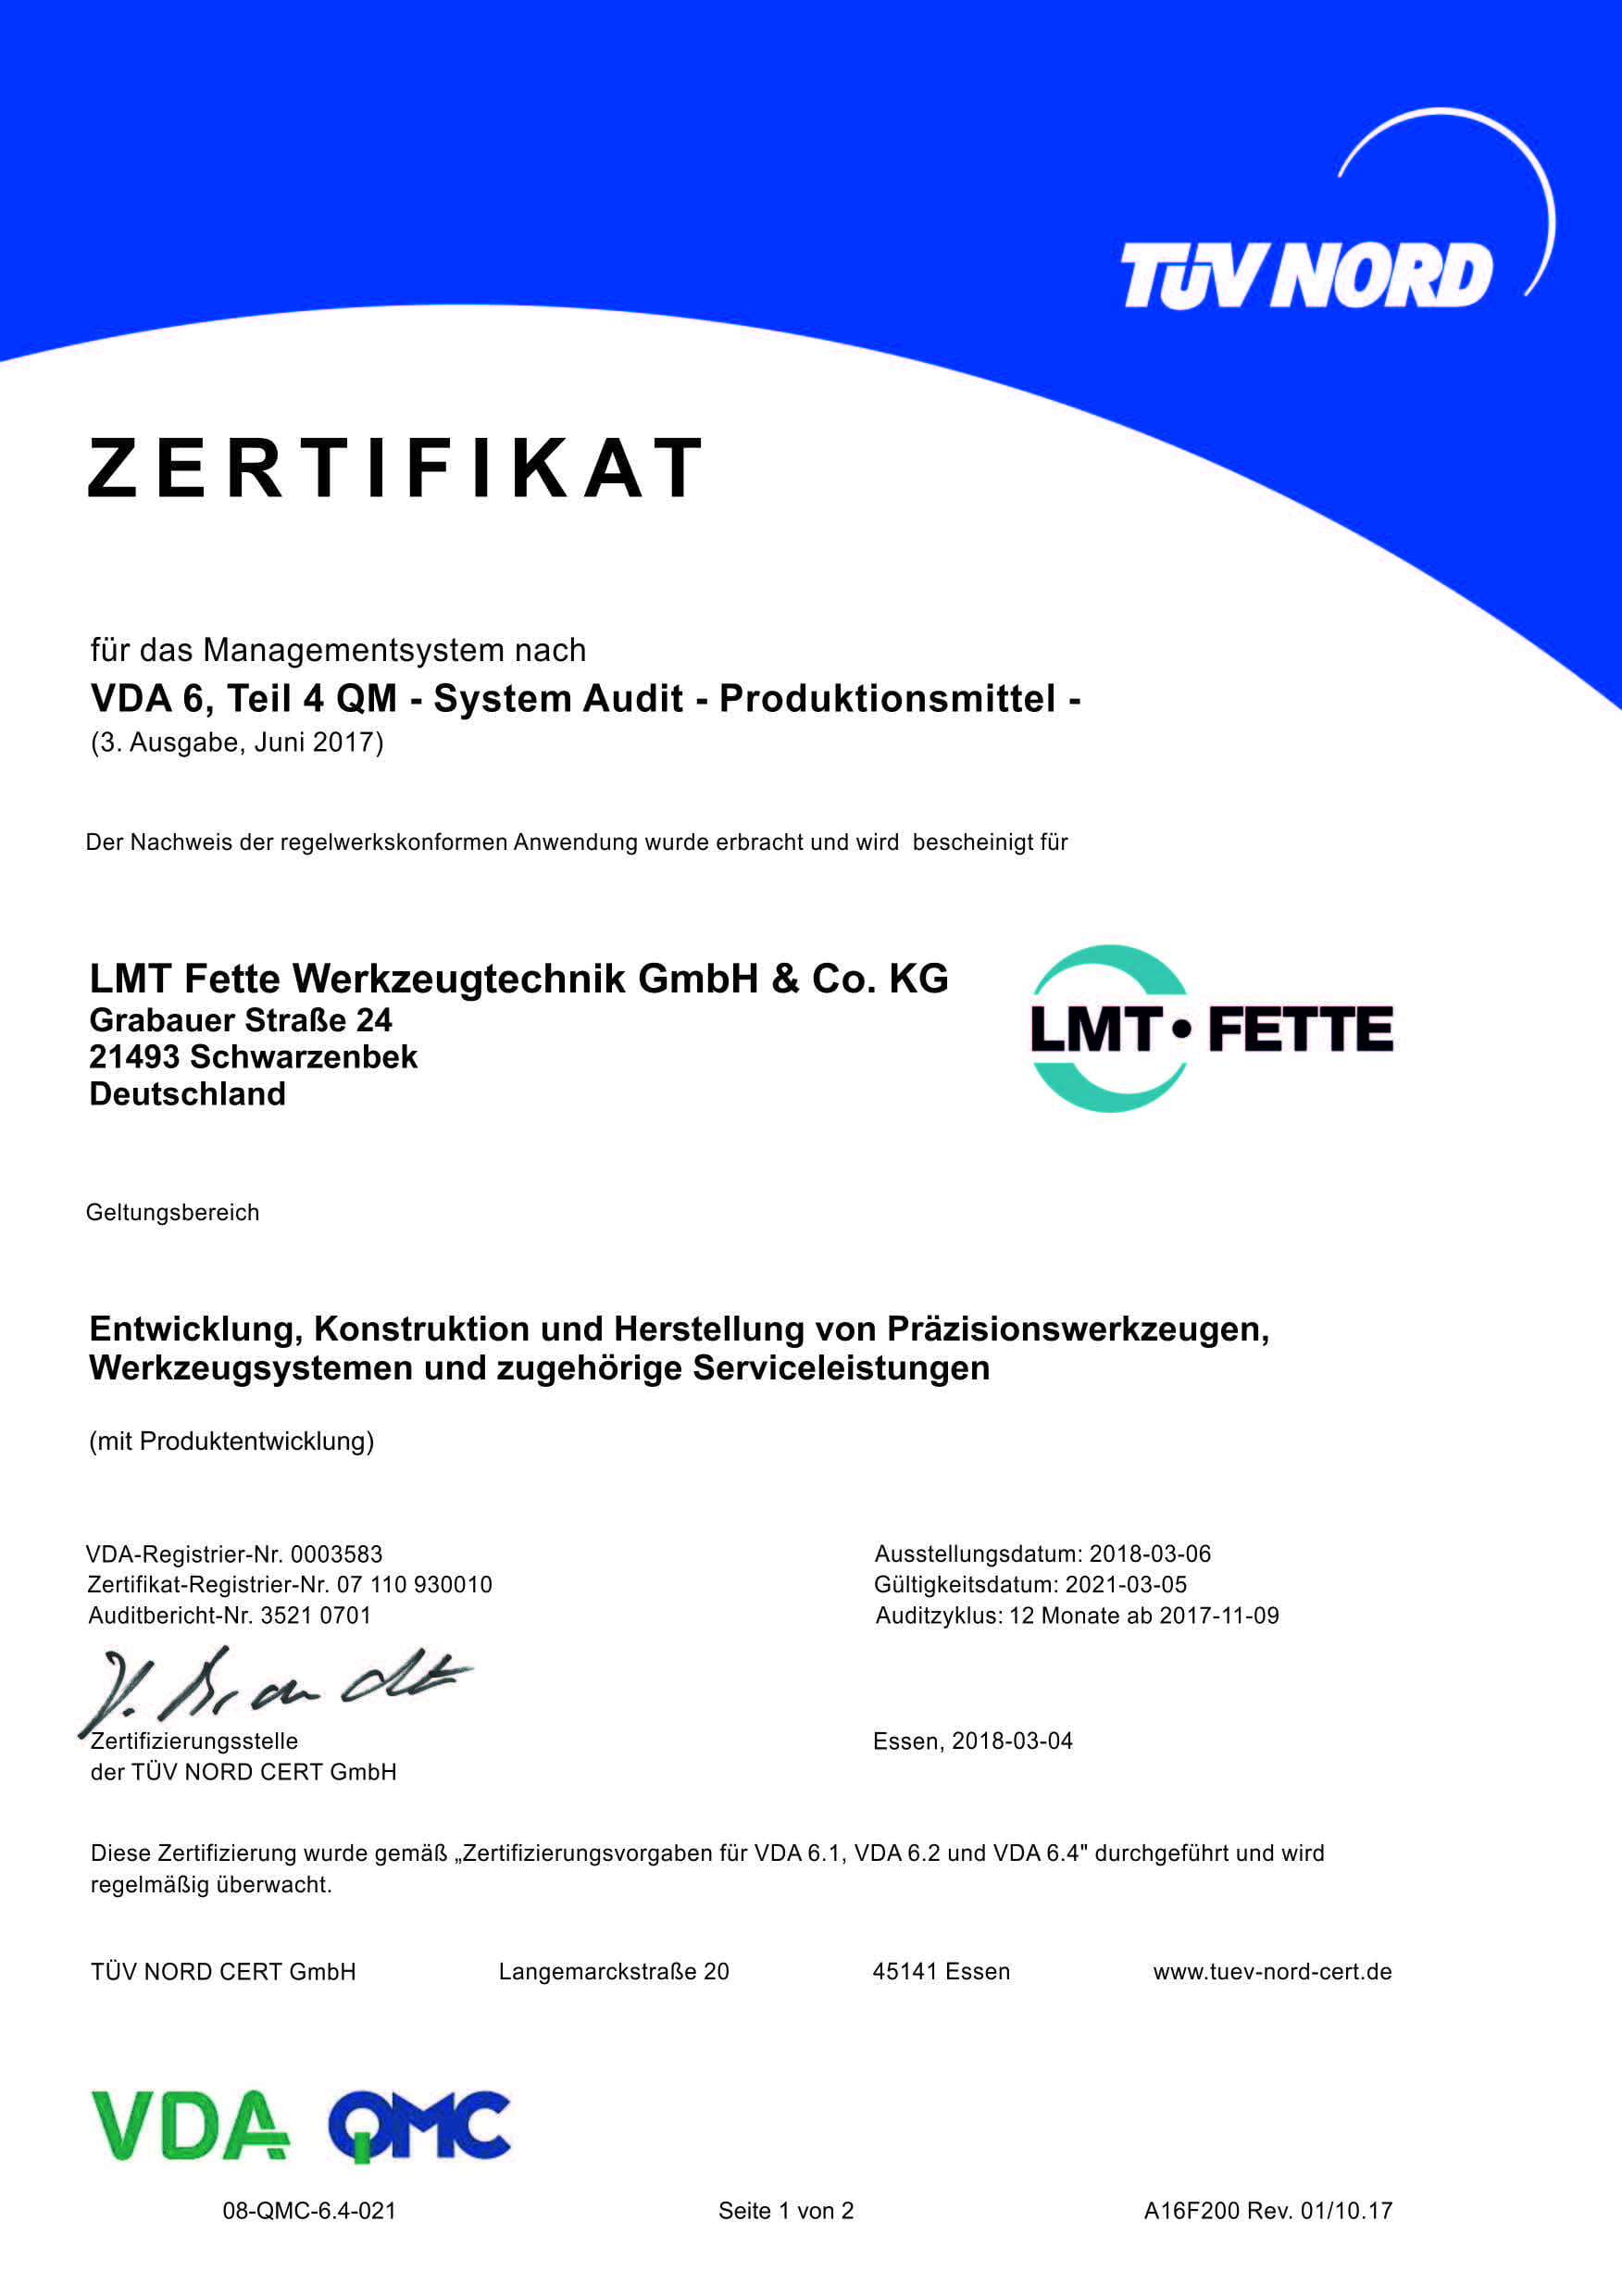 Managementsystem nach VDA 6, Teil 4 QM - LMT Fette Werkzeugtechnik GmbH & Co. KG